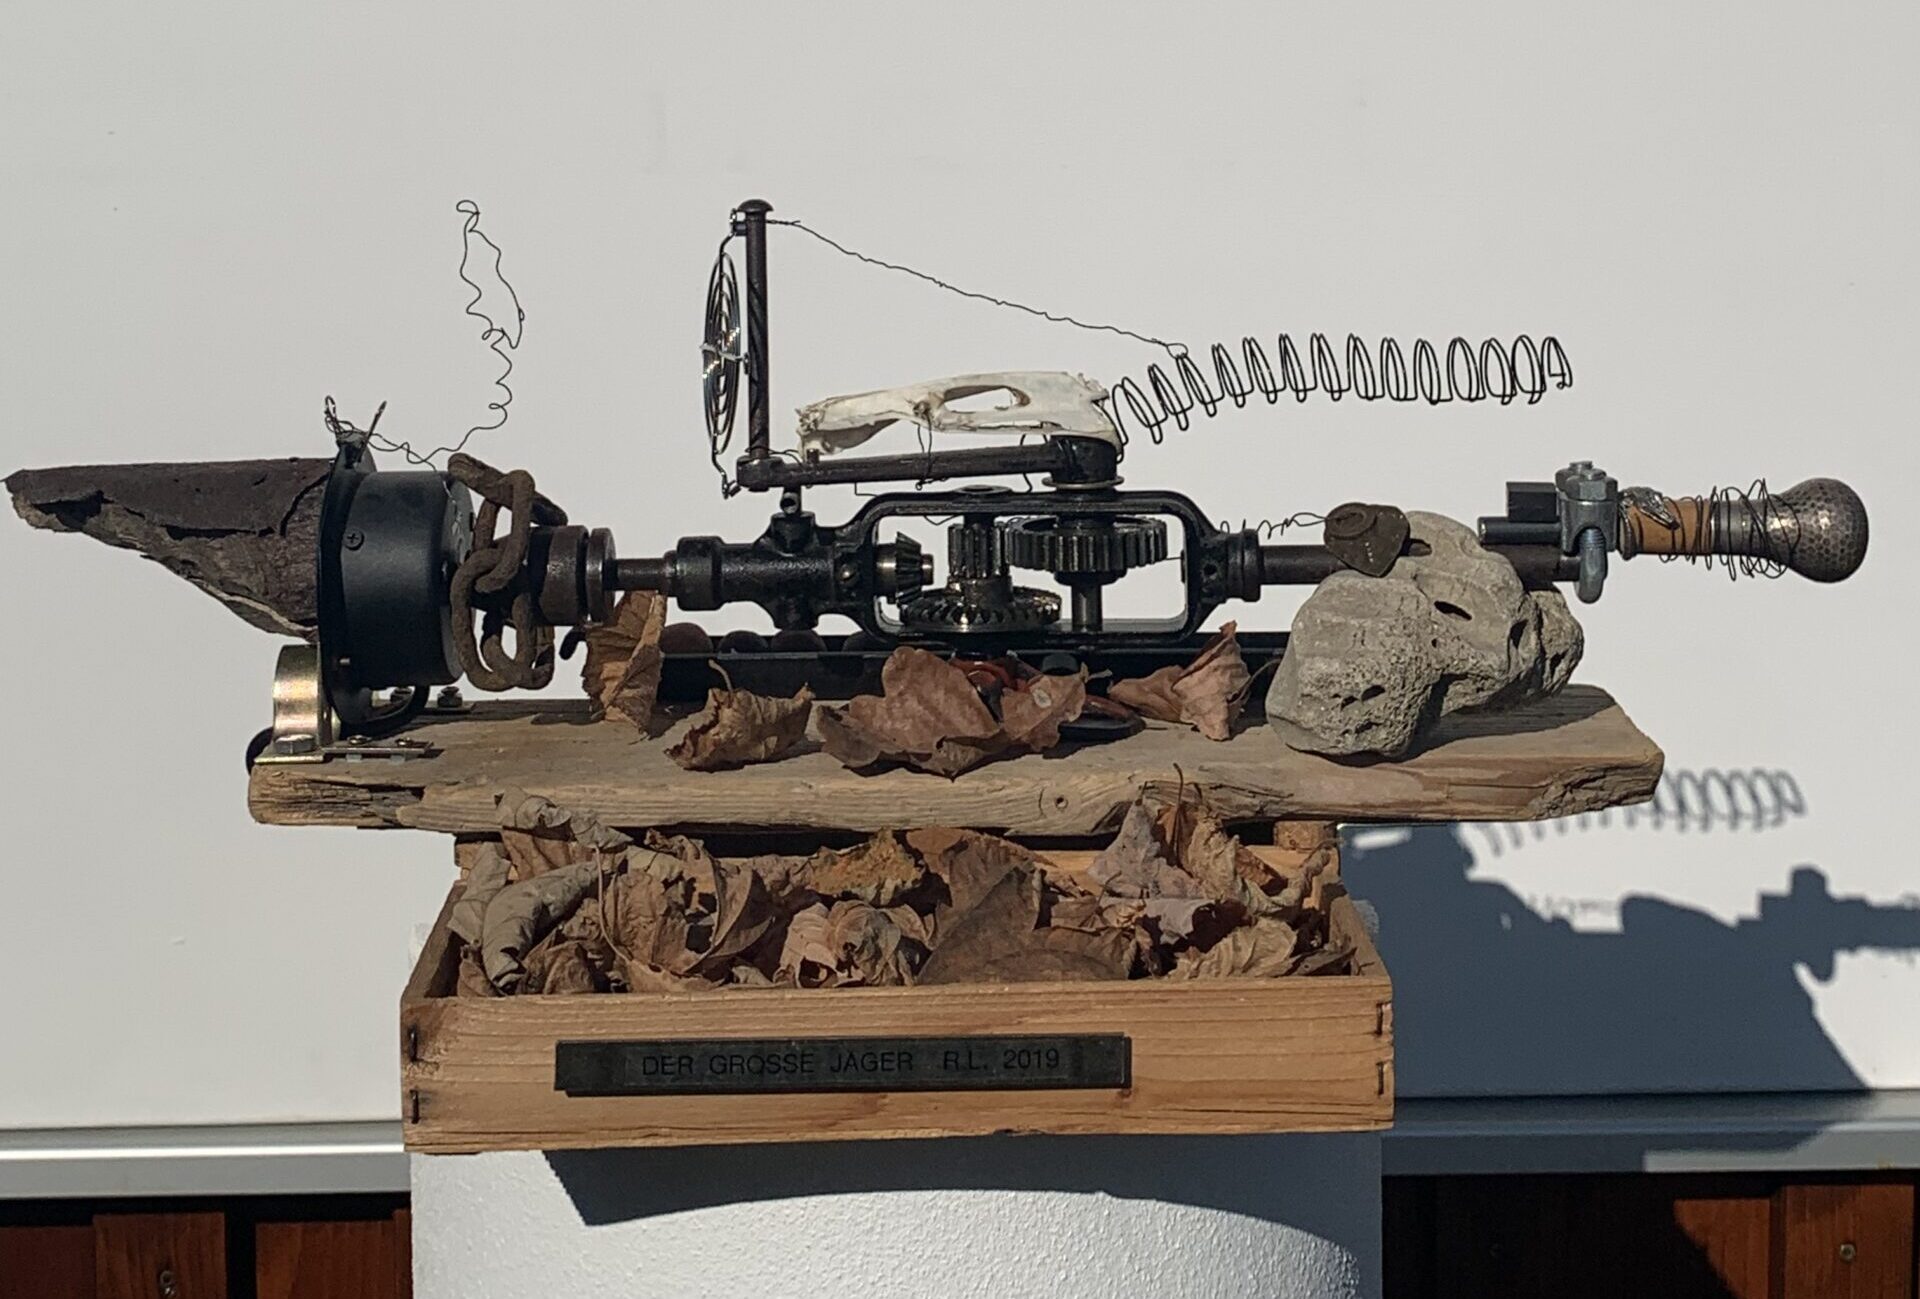 Rainer Leitz Artwork M.11 "Der Große Jäger" Electric Moving Object